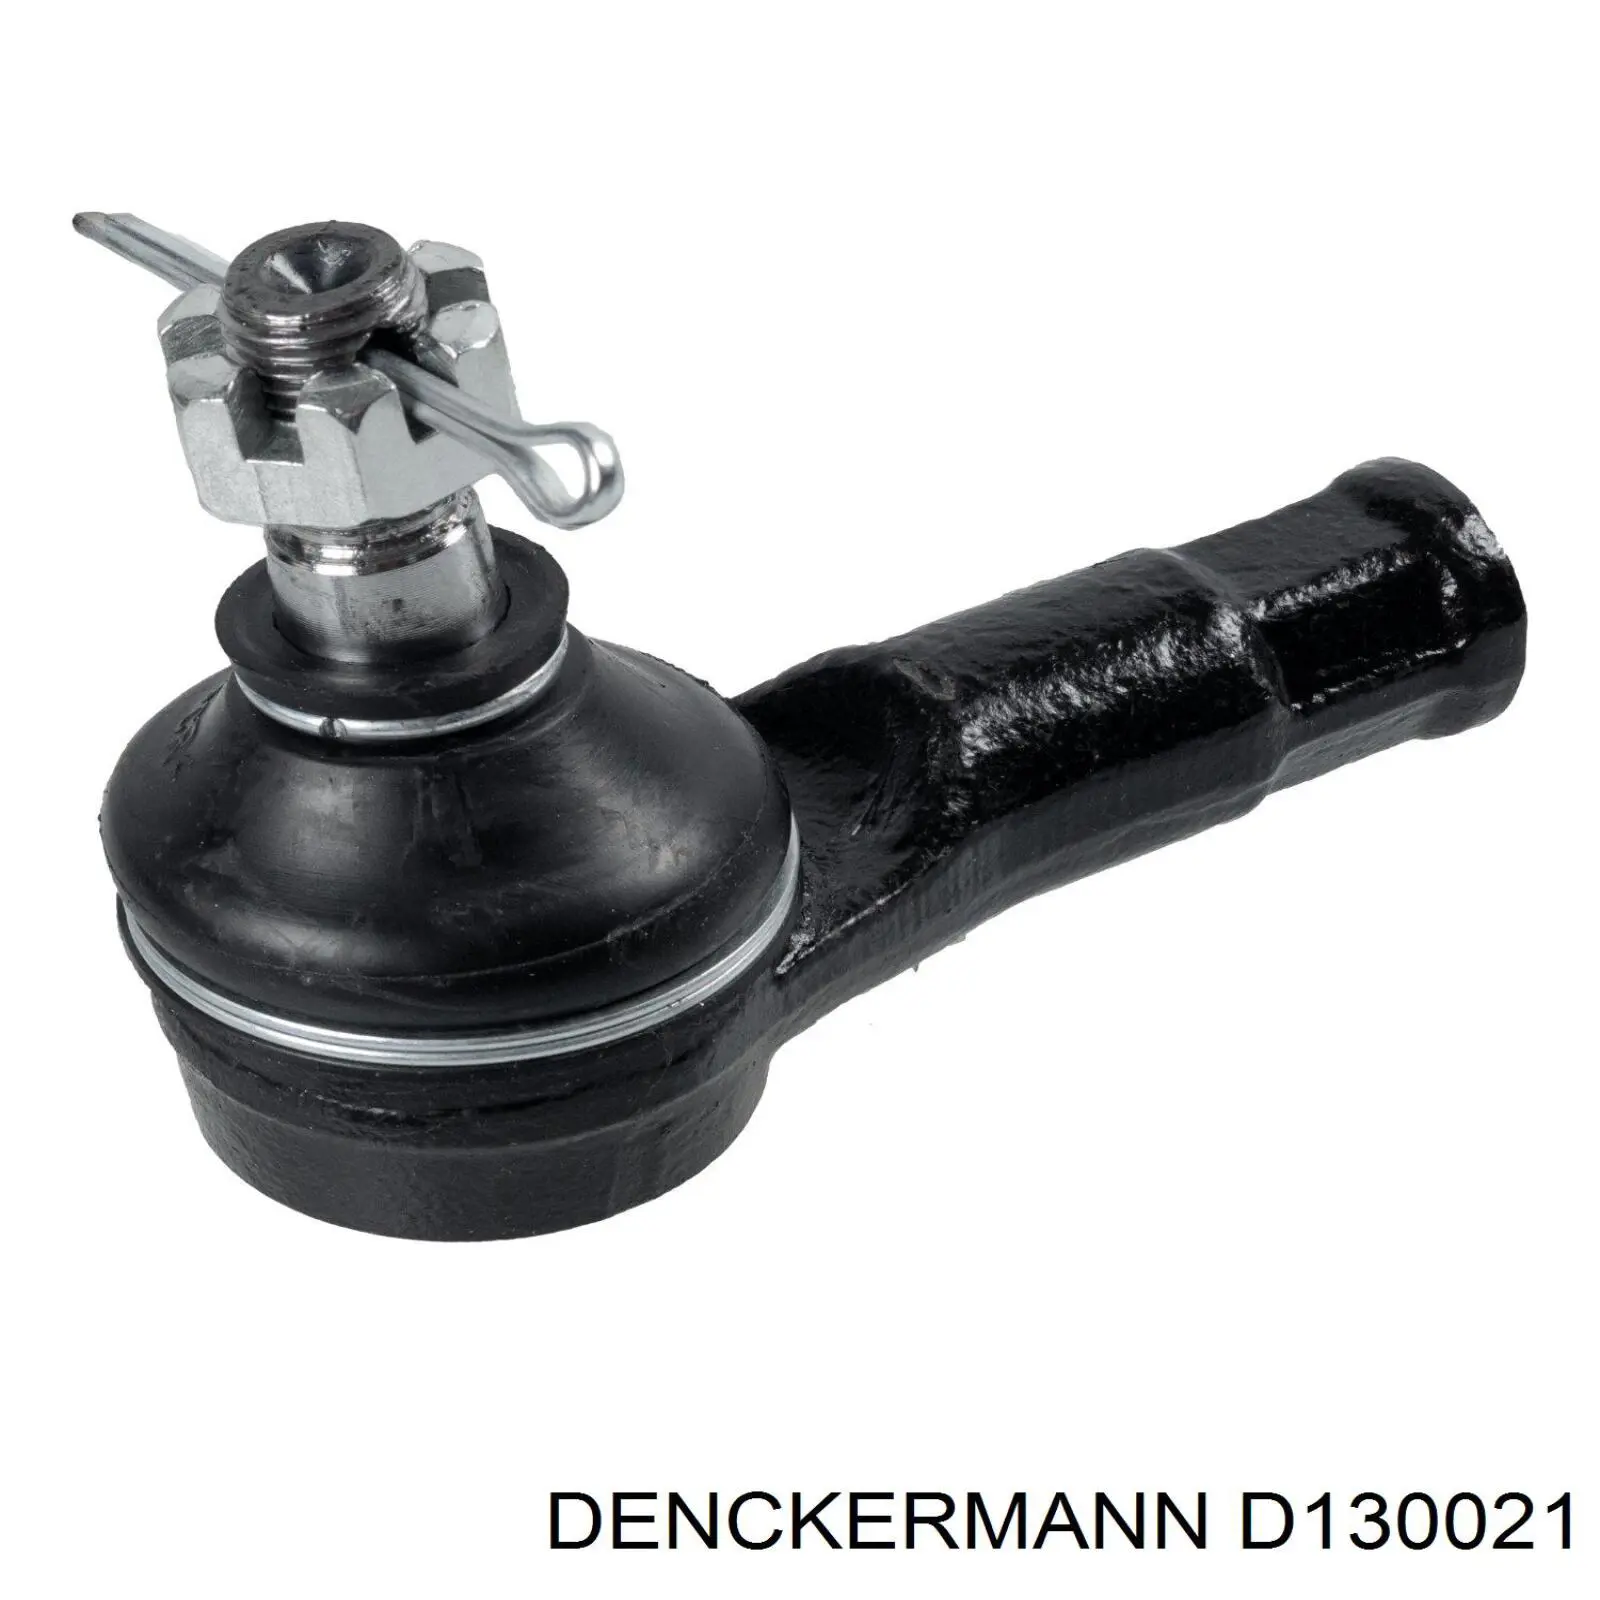 D130021 Denckermann rótula barra de acoplamiento exterior